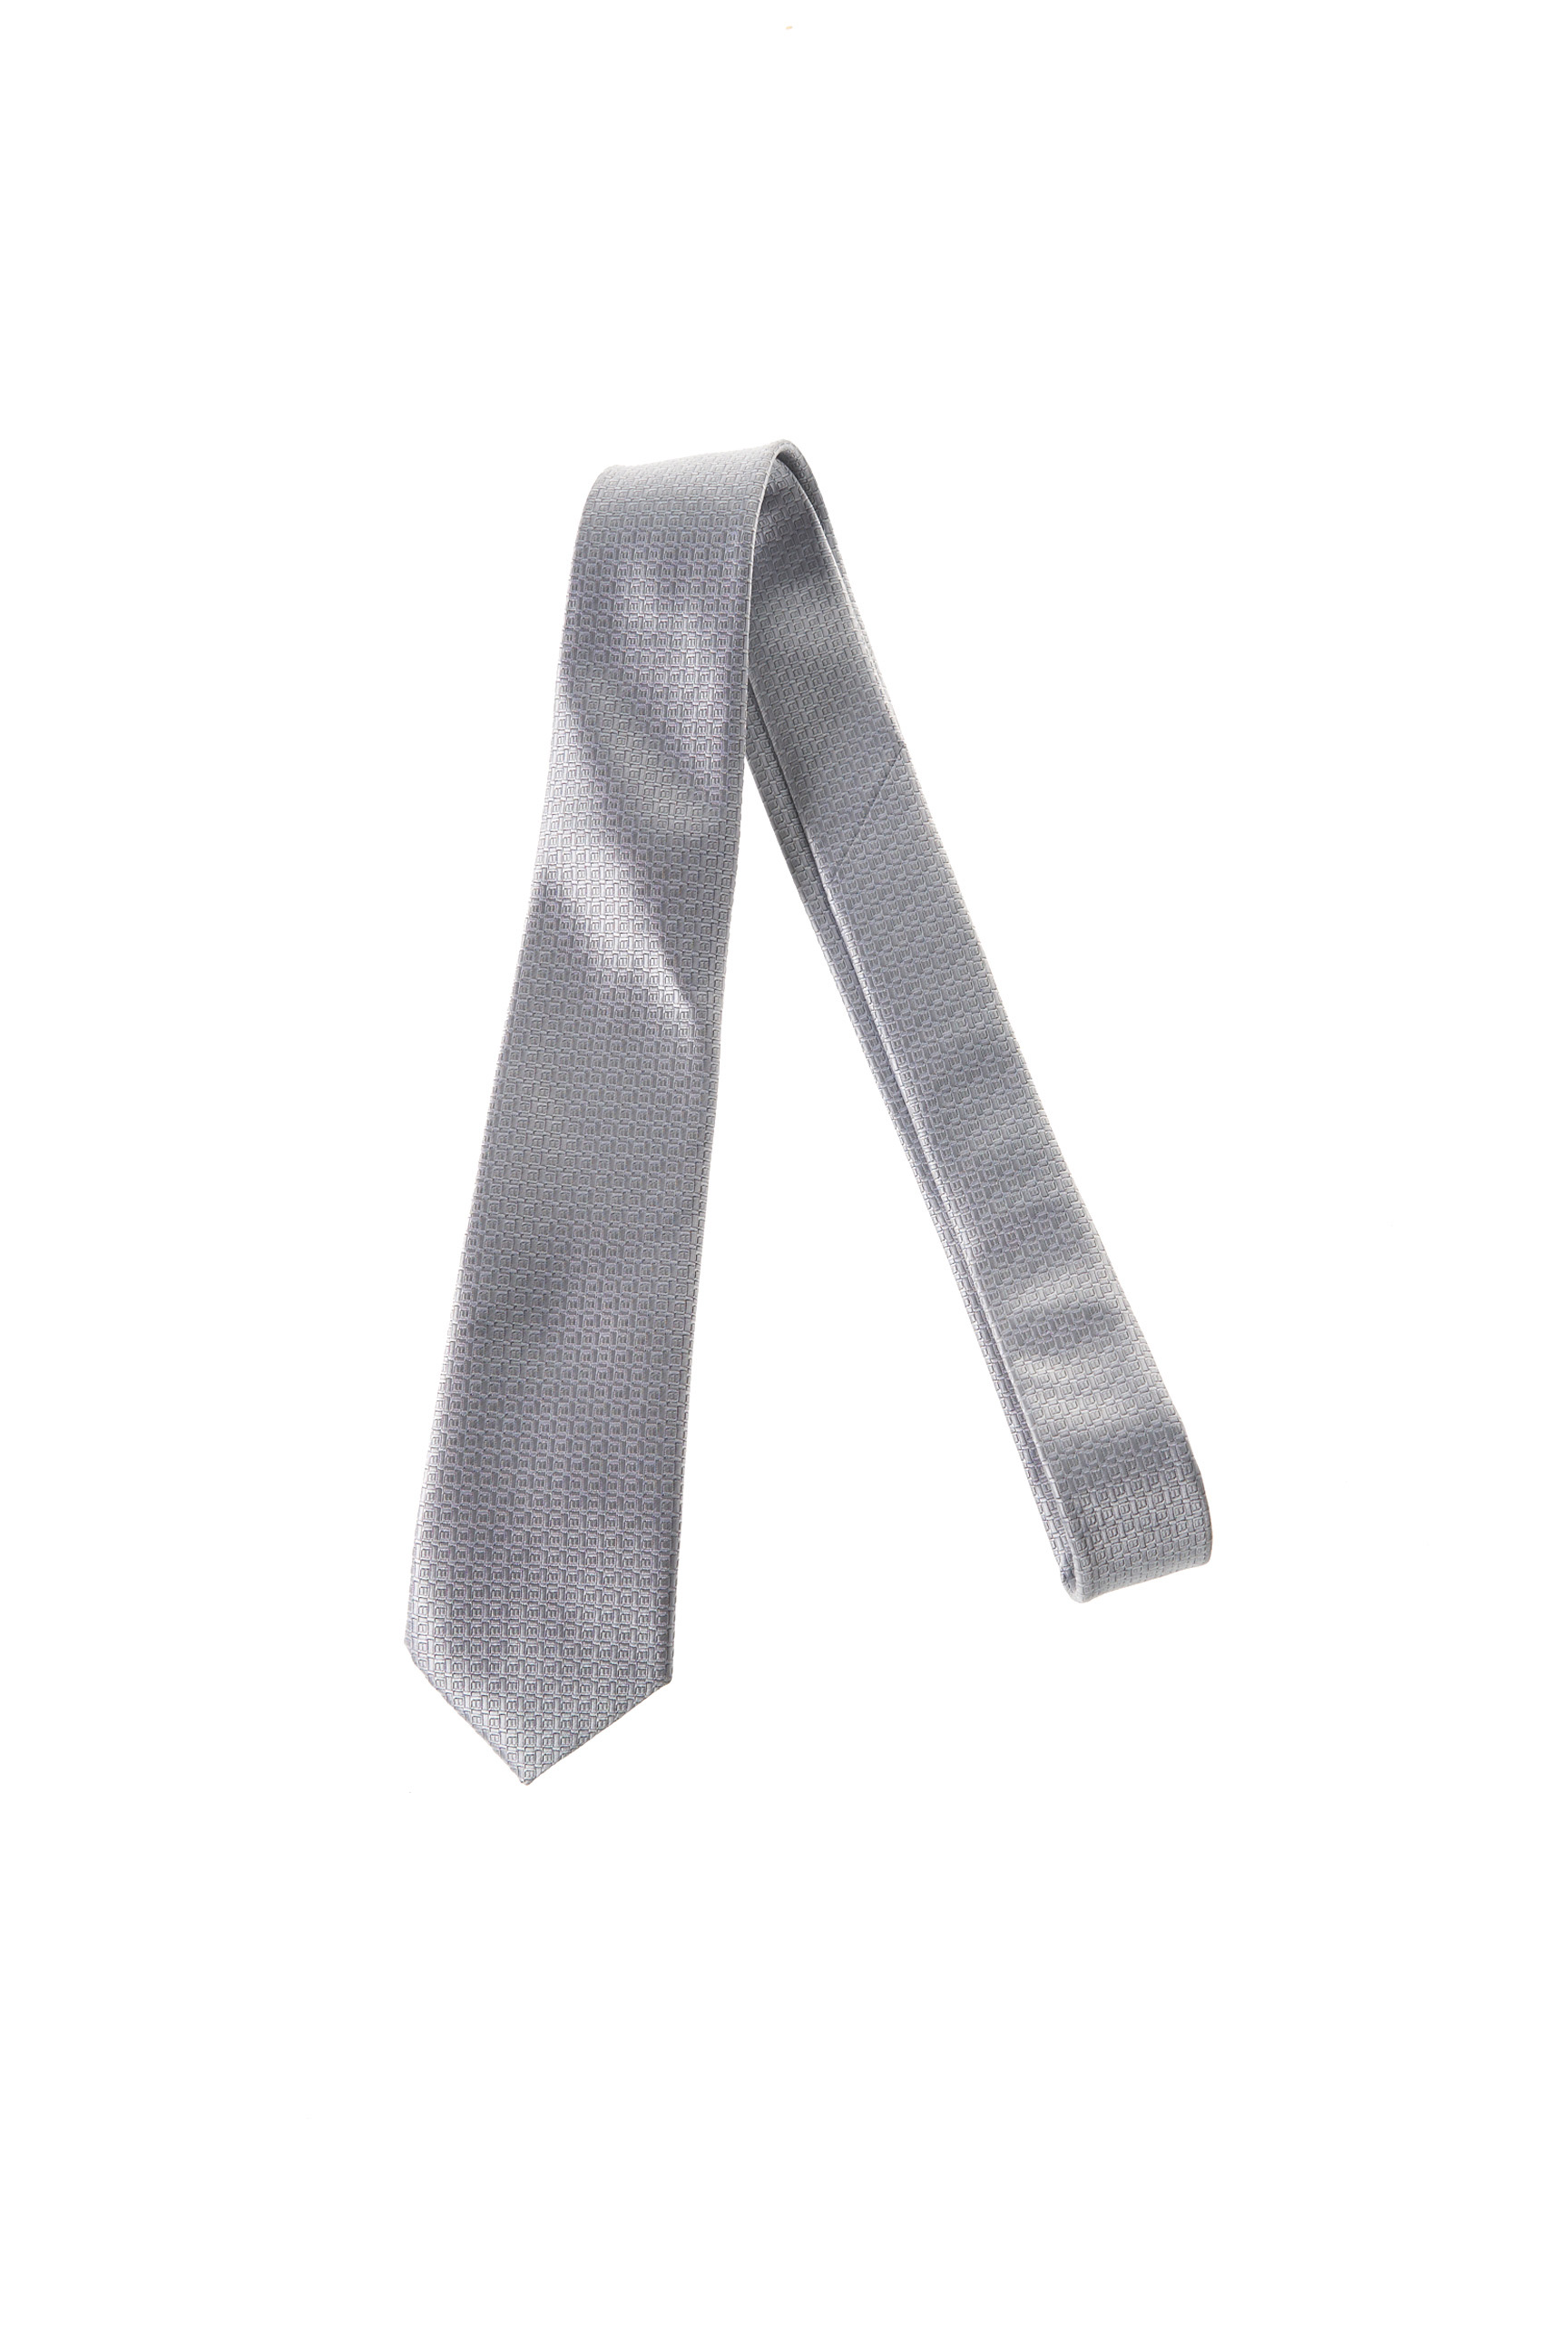 TIE Homme Gris gris N/A Cravate